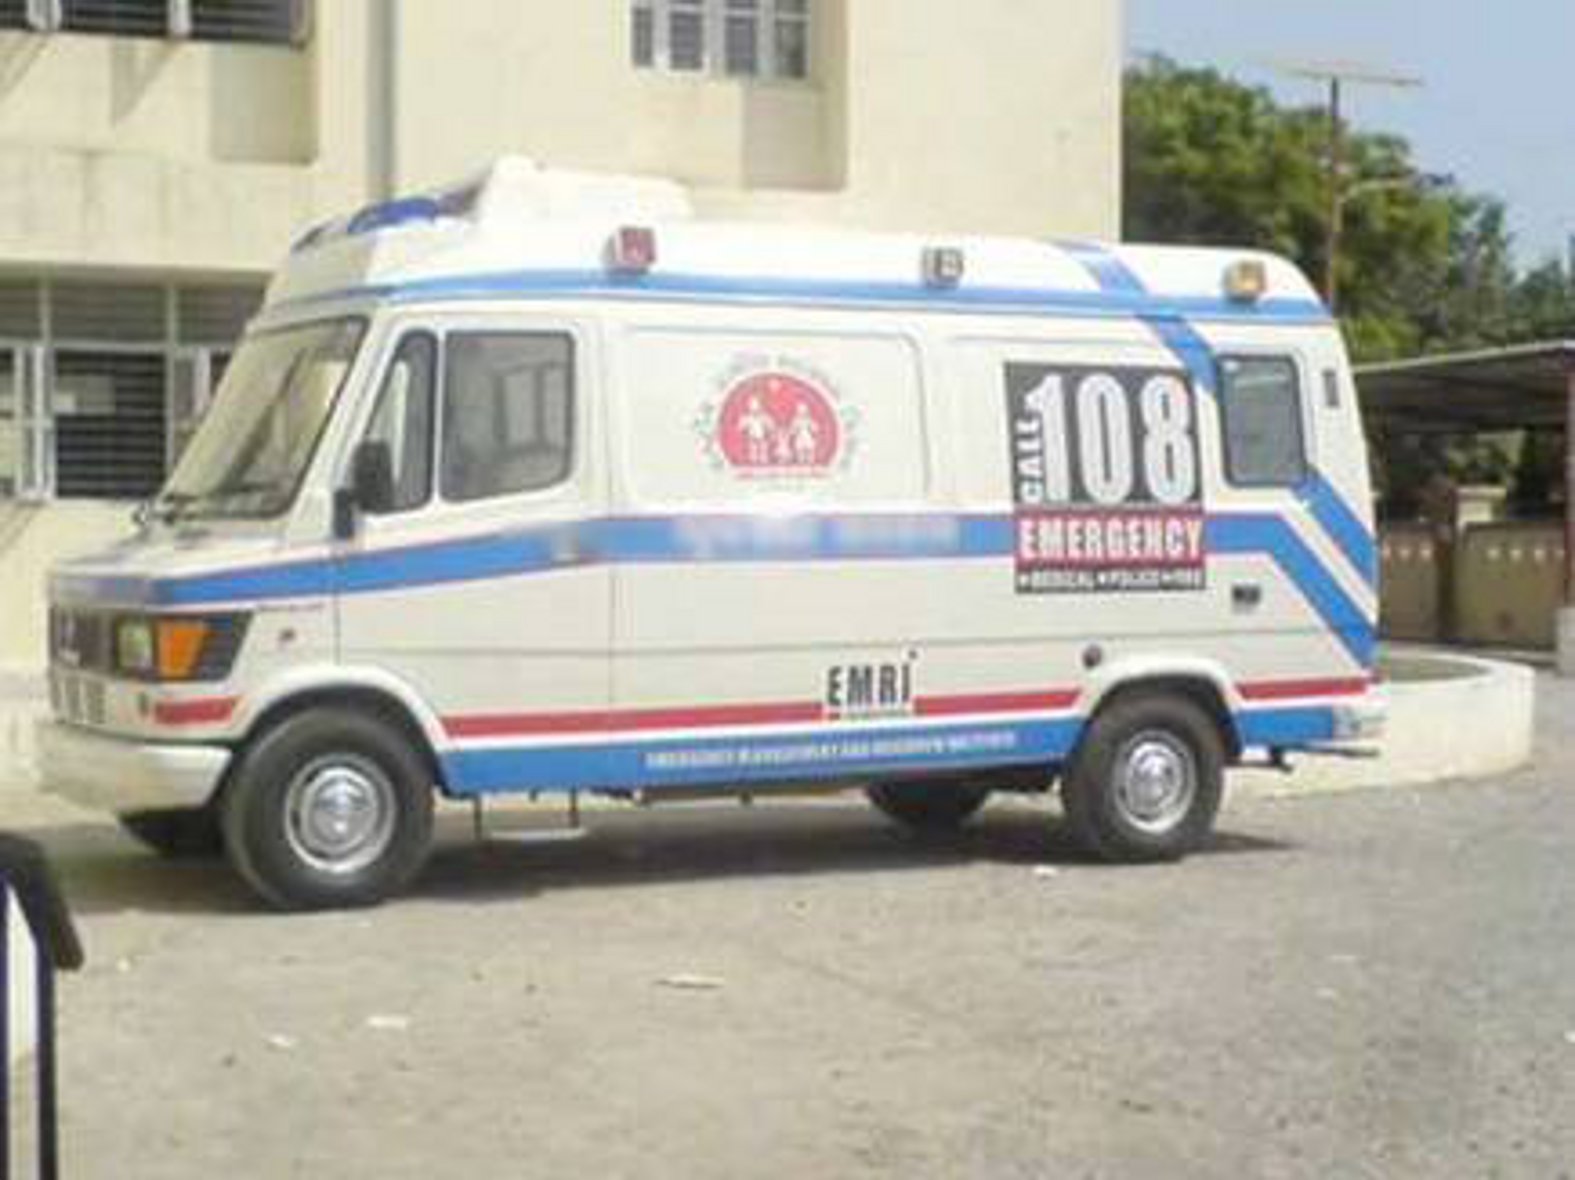 108 ambulances